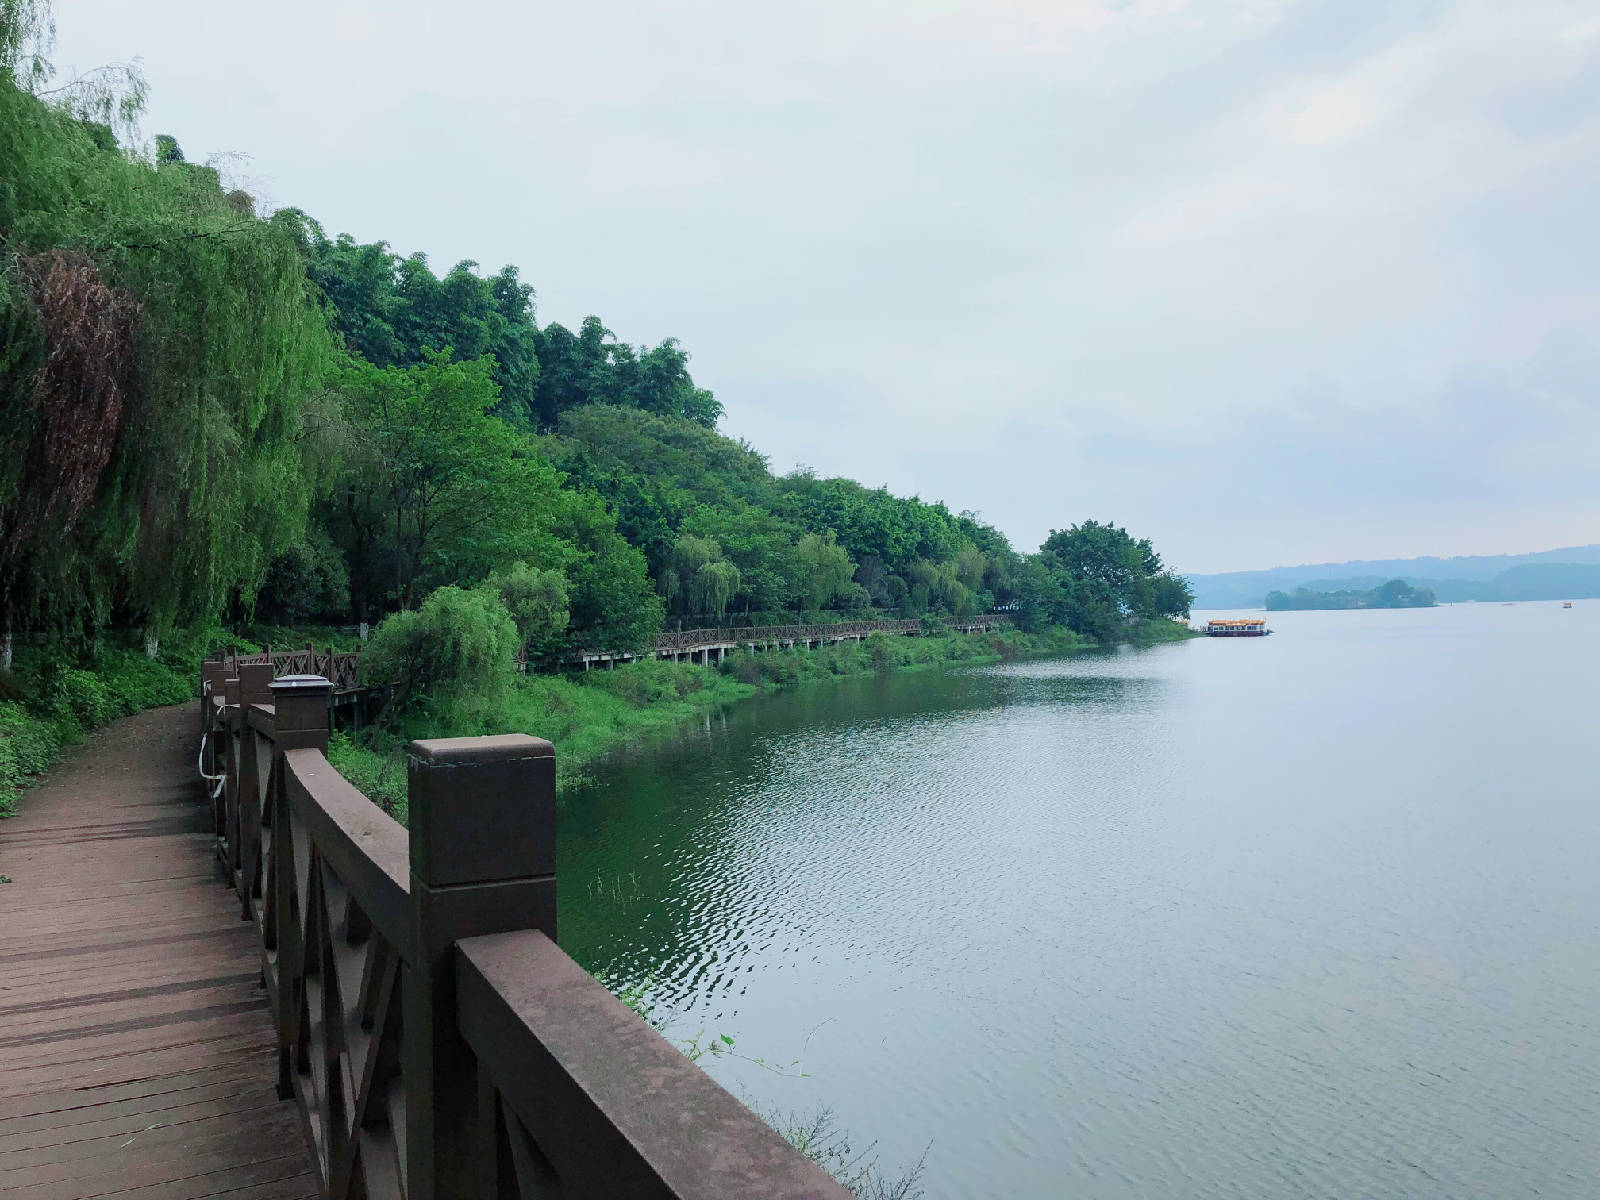 隆昌古宇湖湿地公园图片